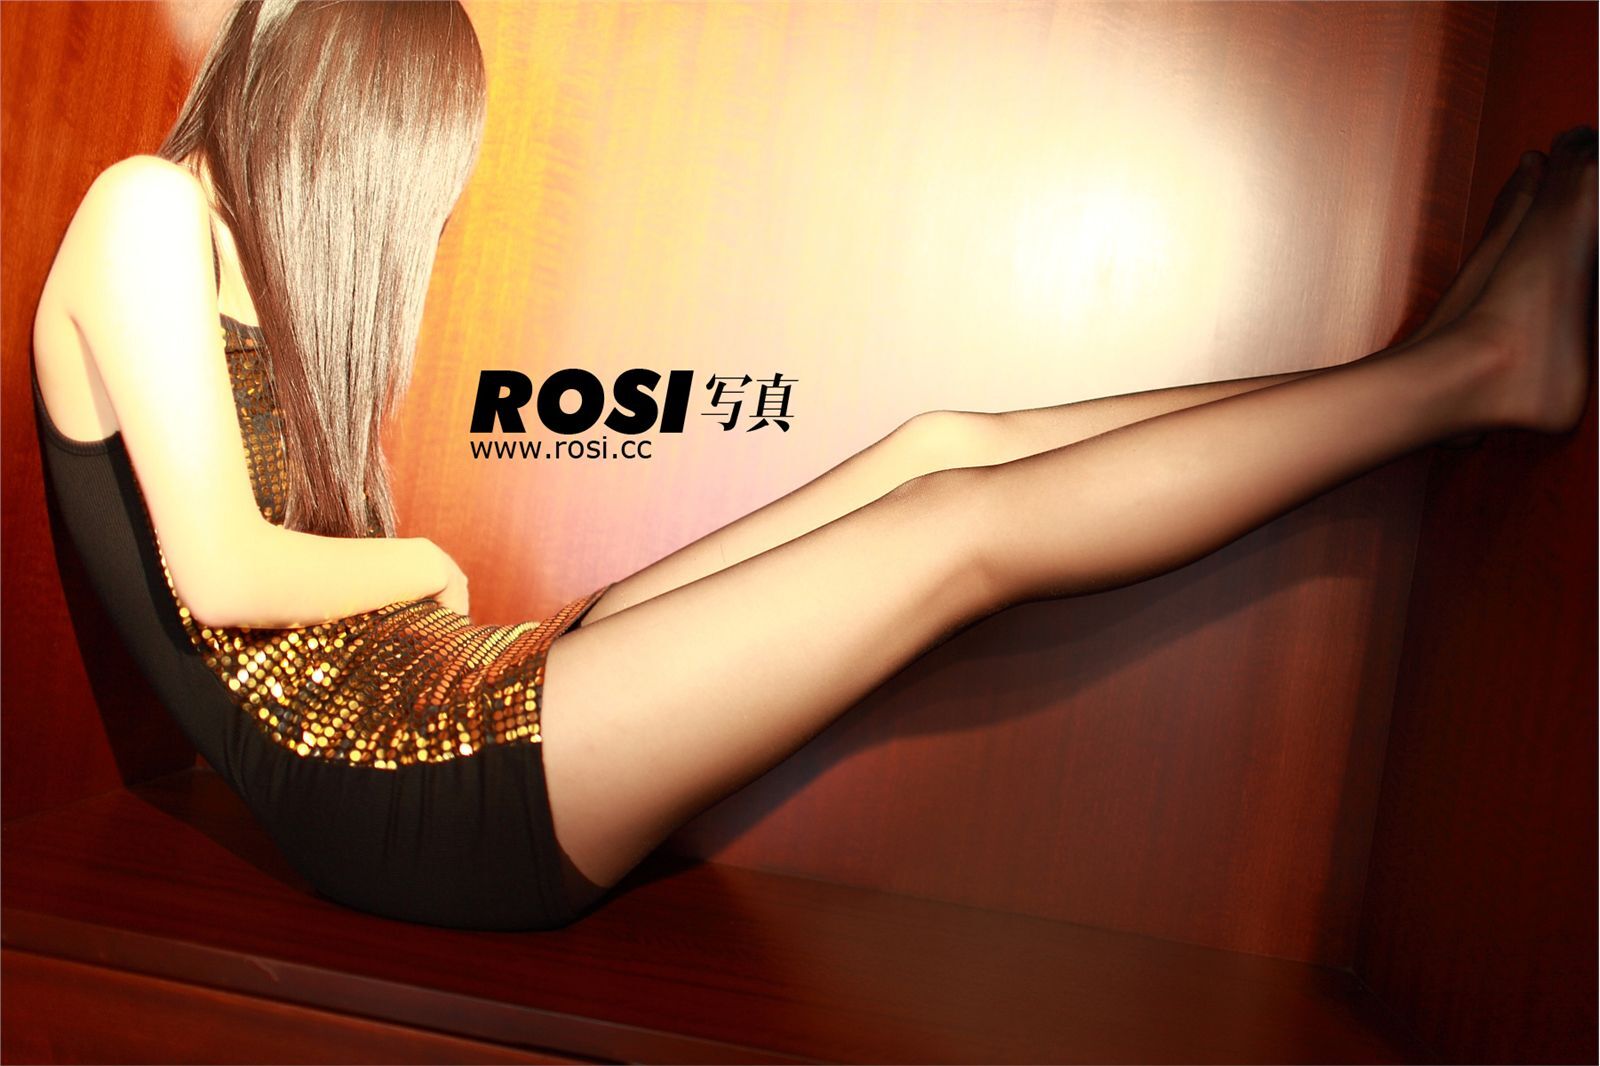 NO.047- ROSI.CC Beauty photo, hazy silk stockings temptation